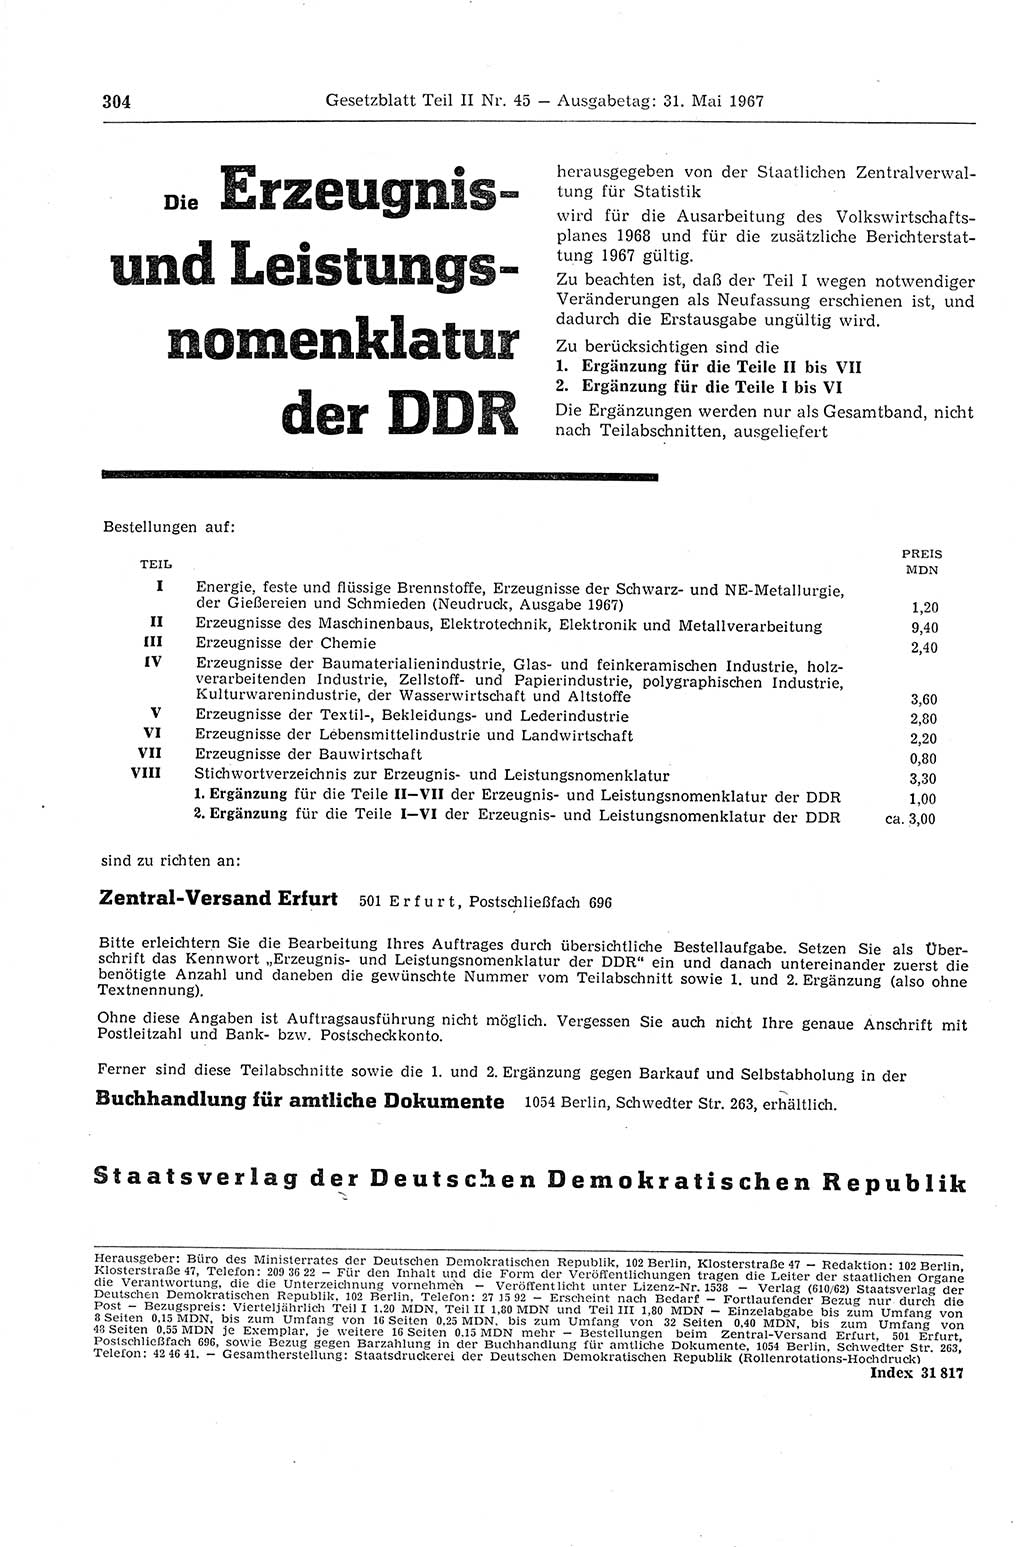 Gesetzblatt (GBl.) der Deutschen Demokratischen Republik (DDR) Teil ⅠⅠ 1967, Seite 304 (GBl. DDR ⅠⅠ 1967, S. 304)